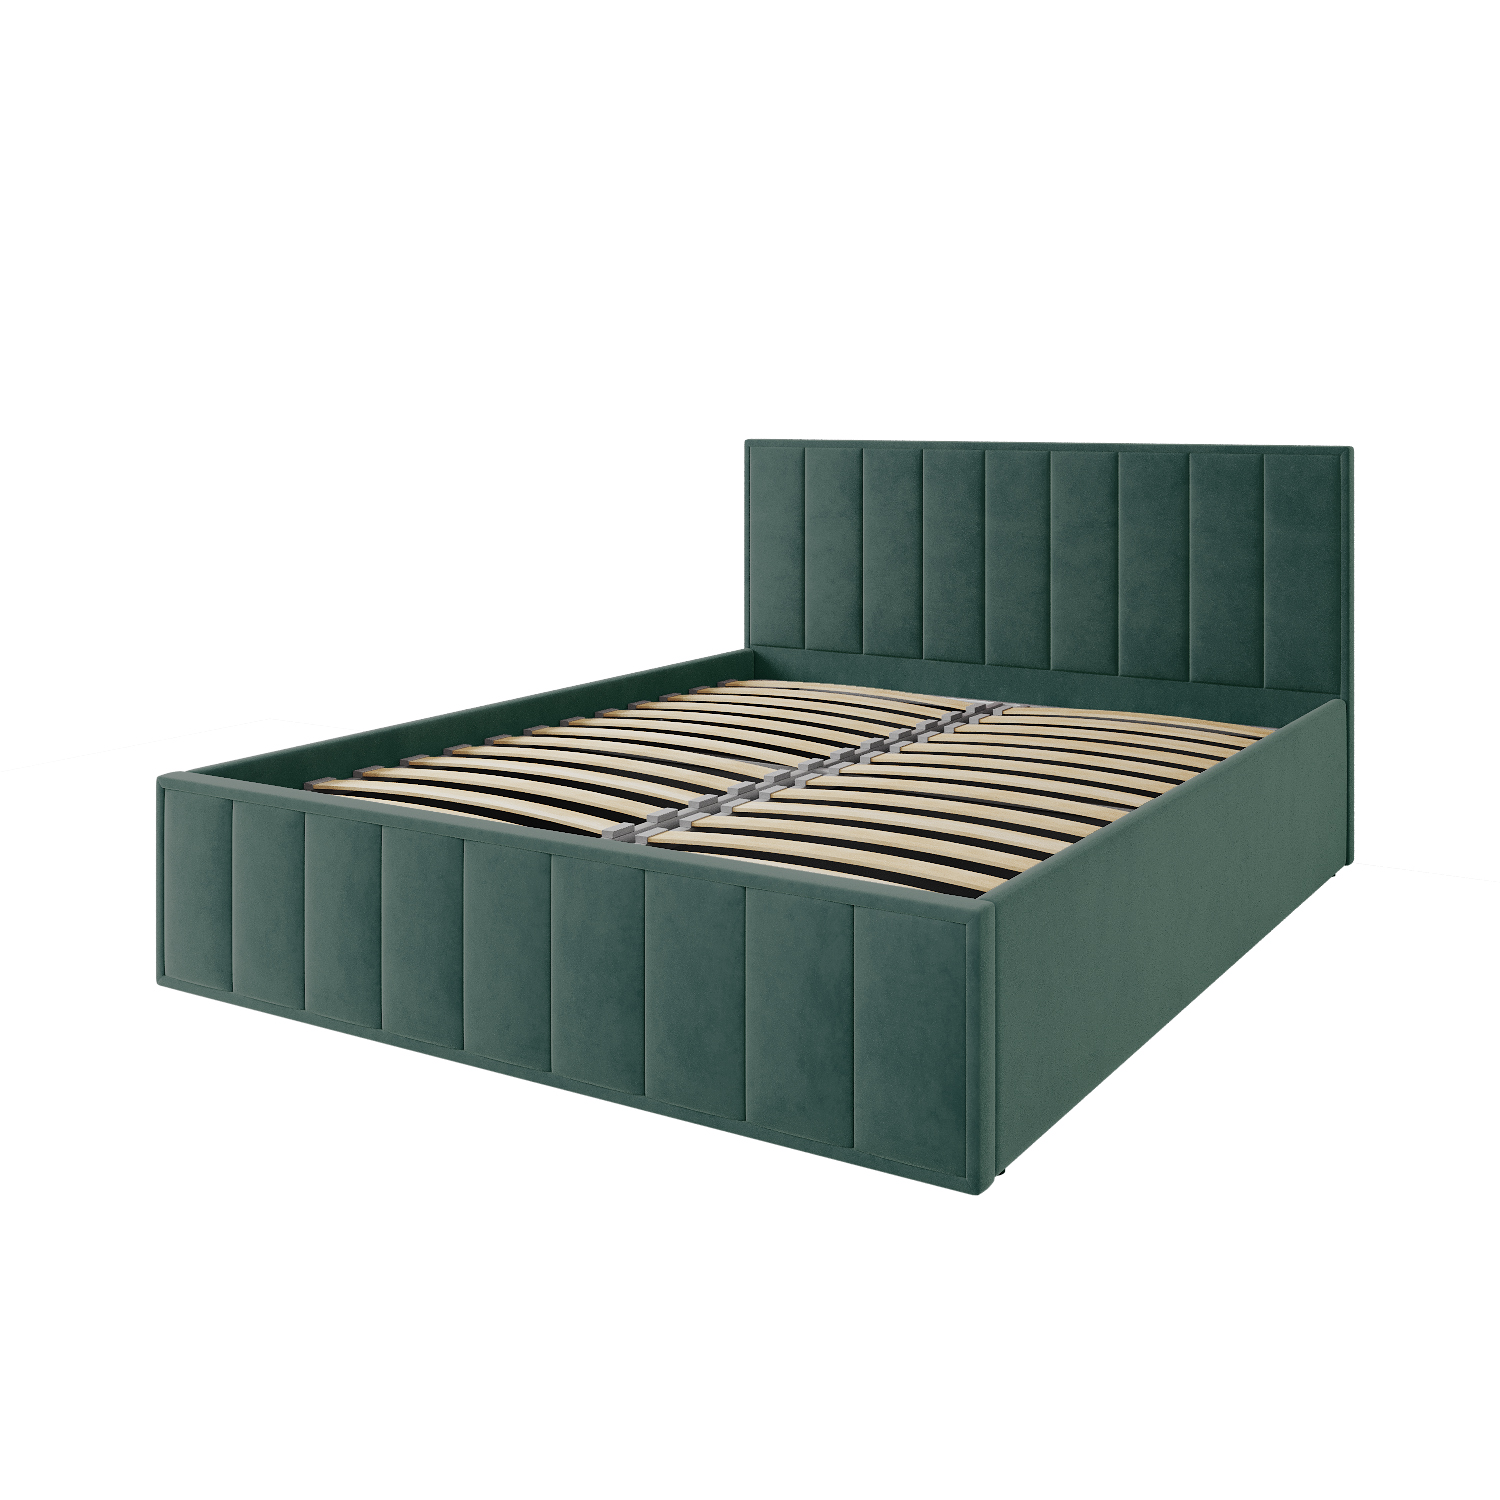 Мягкая кровать Лана 1,8 с подъемным механизмом (зеленый велюр)